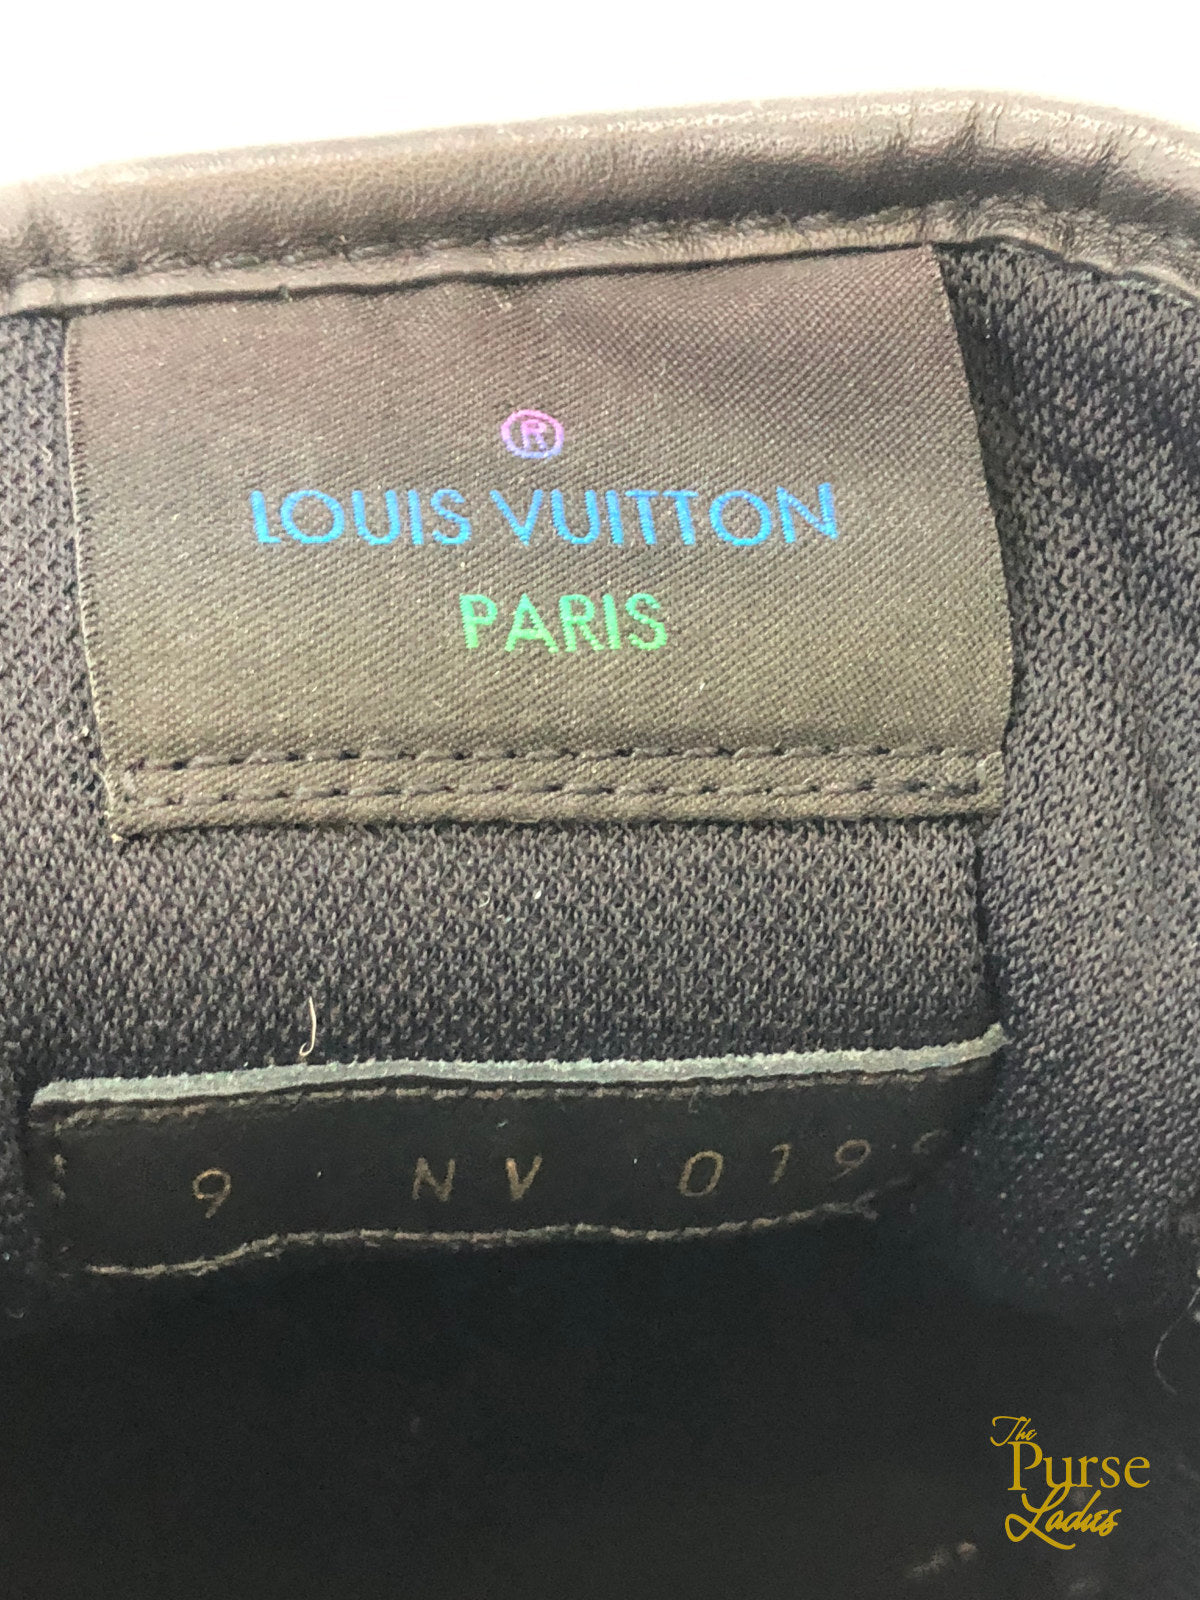 Shop Louis Vuitton Men's Items